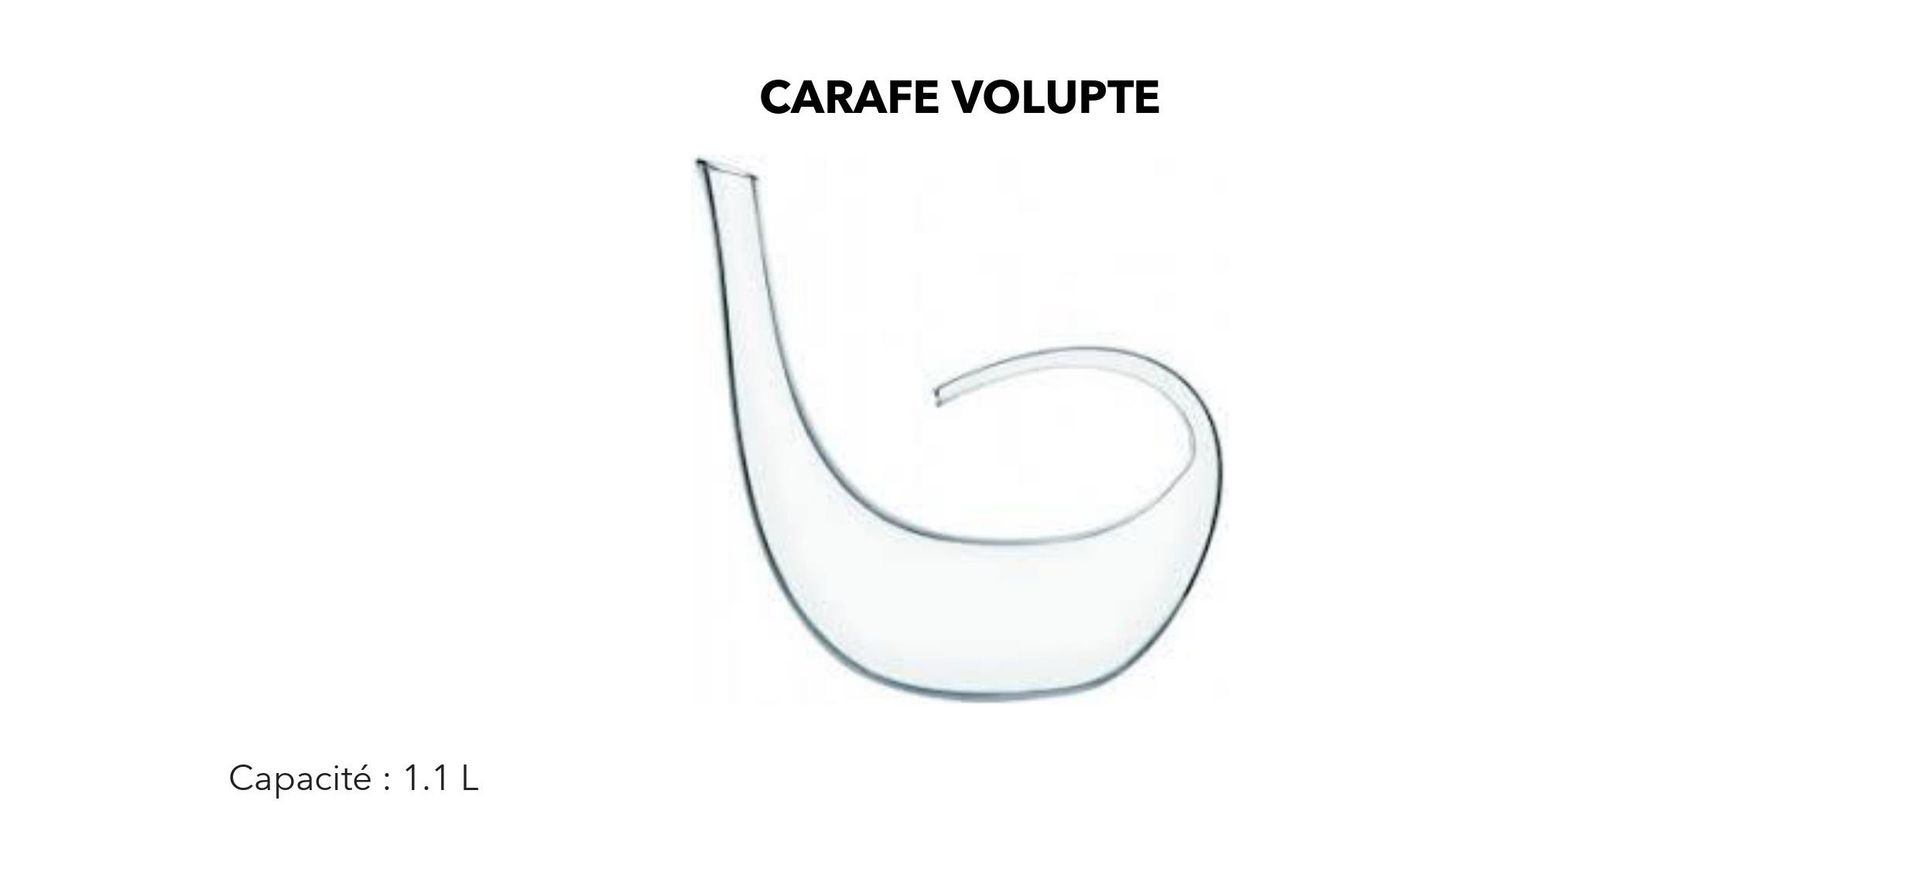 Carafe Volupté (capacité 1.1L) x 2 unités mise à prix 195€